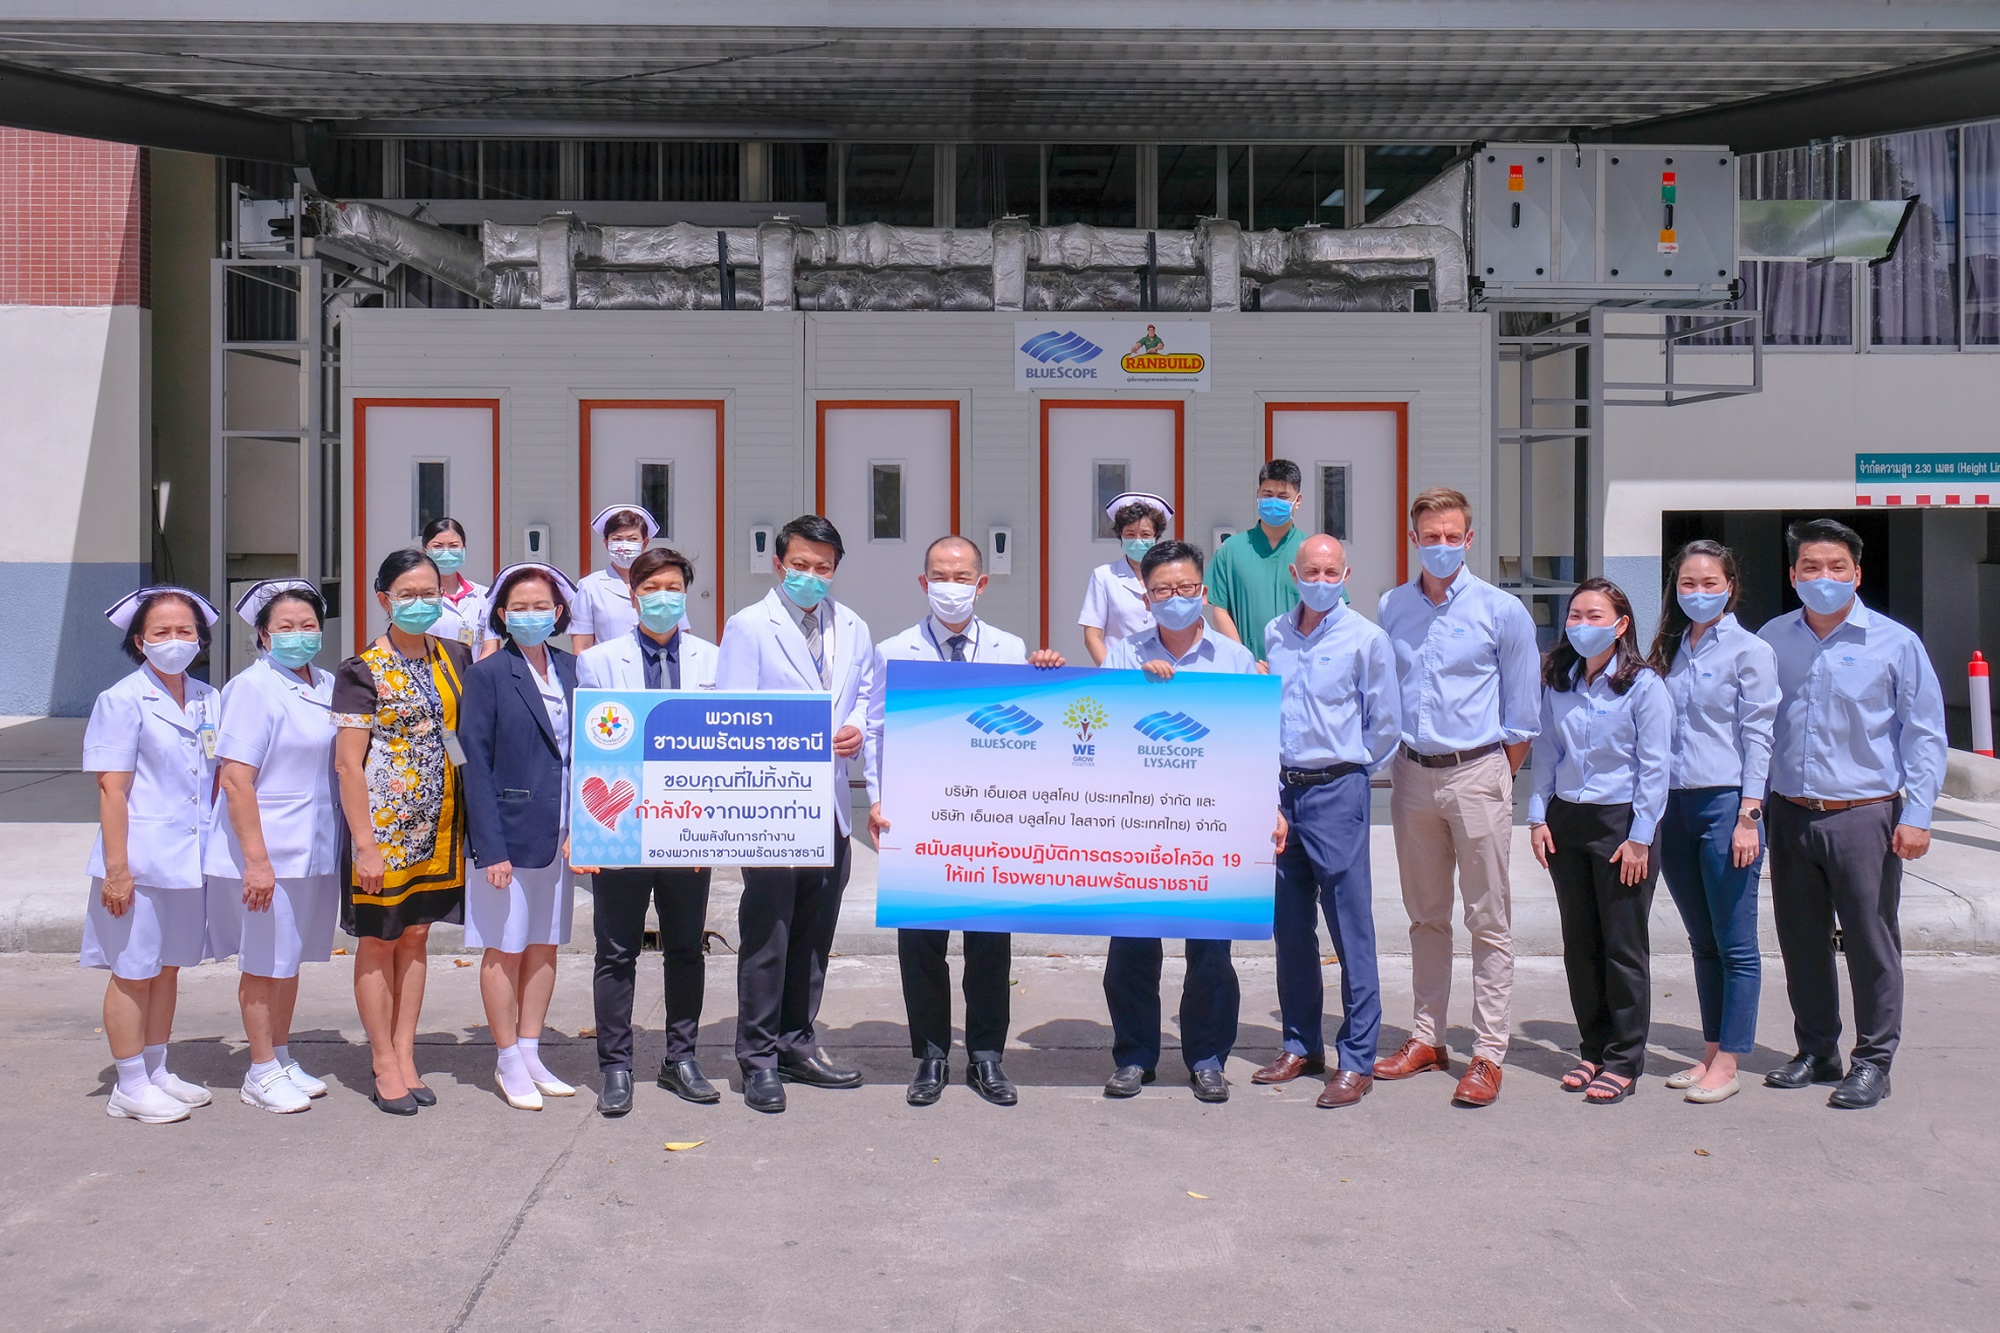 ภาพข่าว: บลูสโคป ประเทศไทย มอบห้องตรวจความดันลบเพื่อคัดกรองผู้ติดเชื้อโรคโควิด-19 ให้ทีมแพทย์ รพ.นพรัตนราชธานี